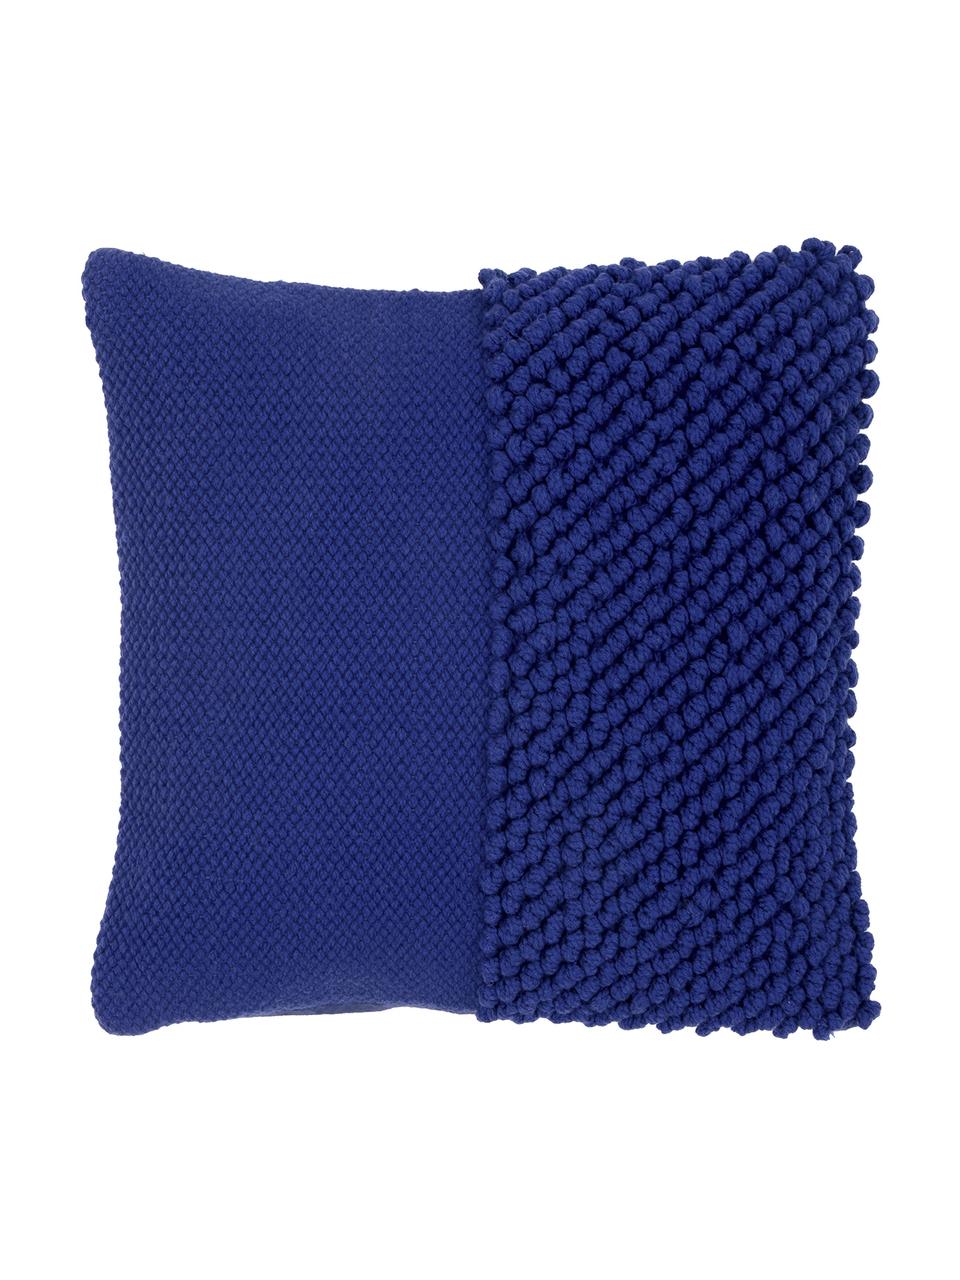 Poszewka na poduszkę Andi, 90% akryl, 10% bawełna, Niebieski, S 40 x D 40 cm